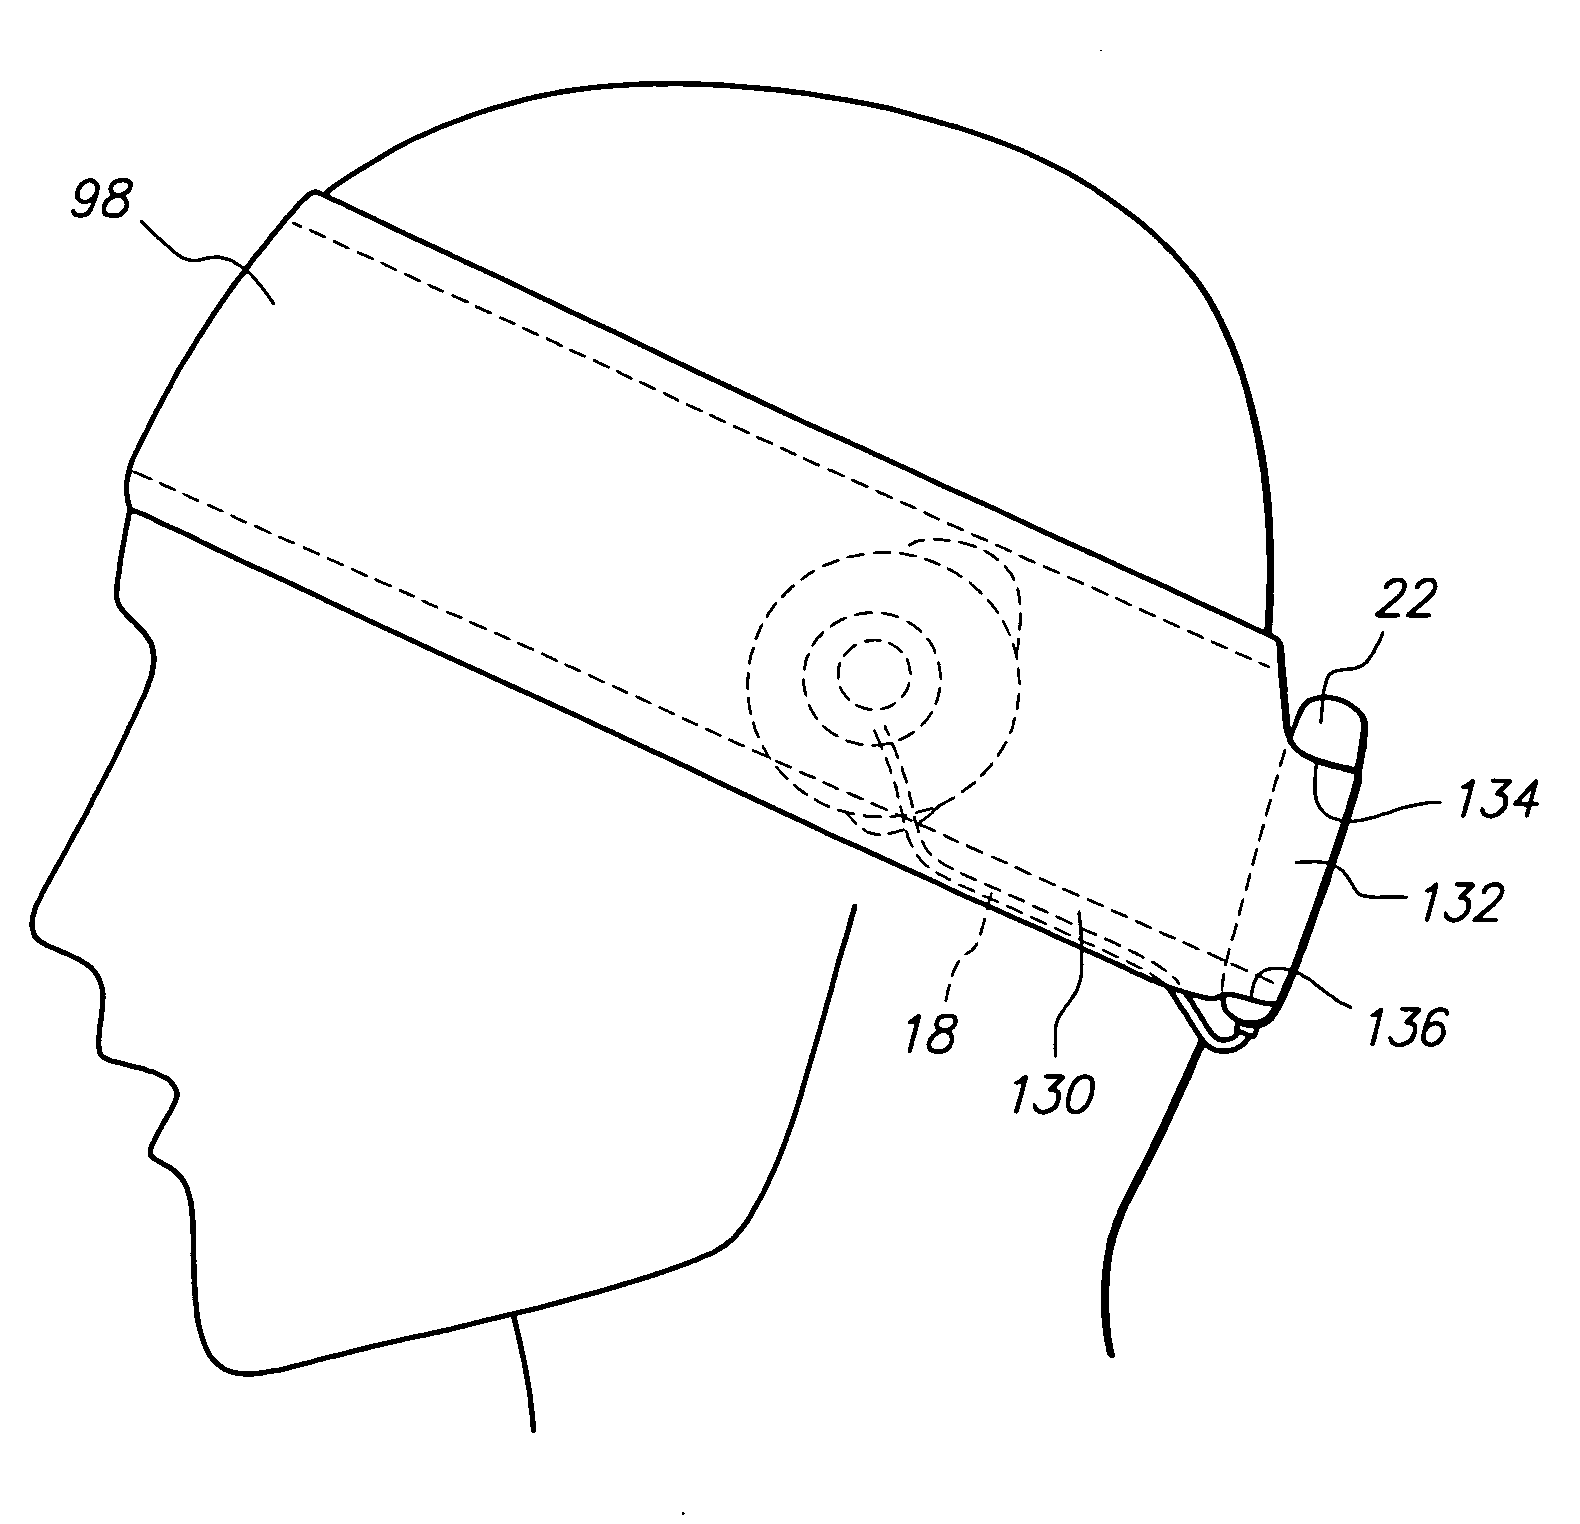 Durable and/or waterproof music earwear for helmets/headgear